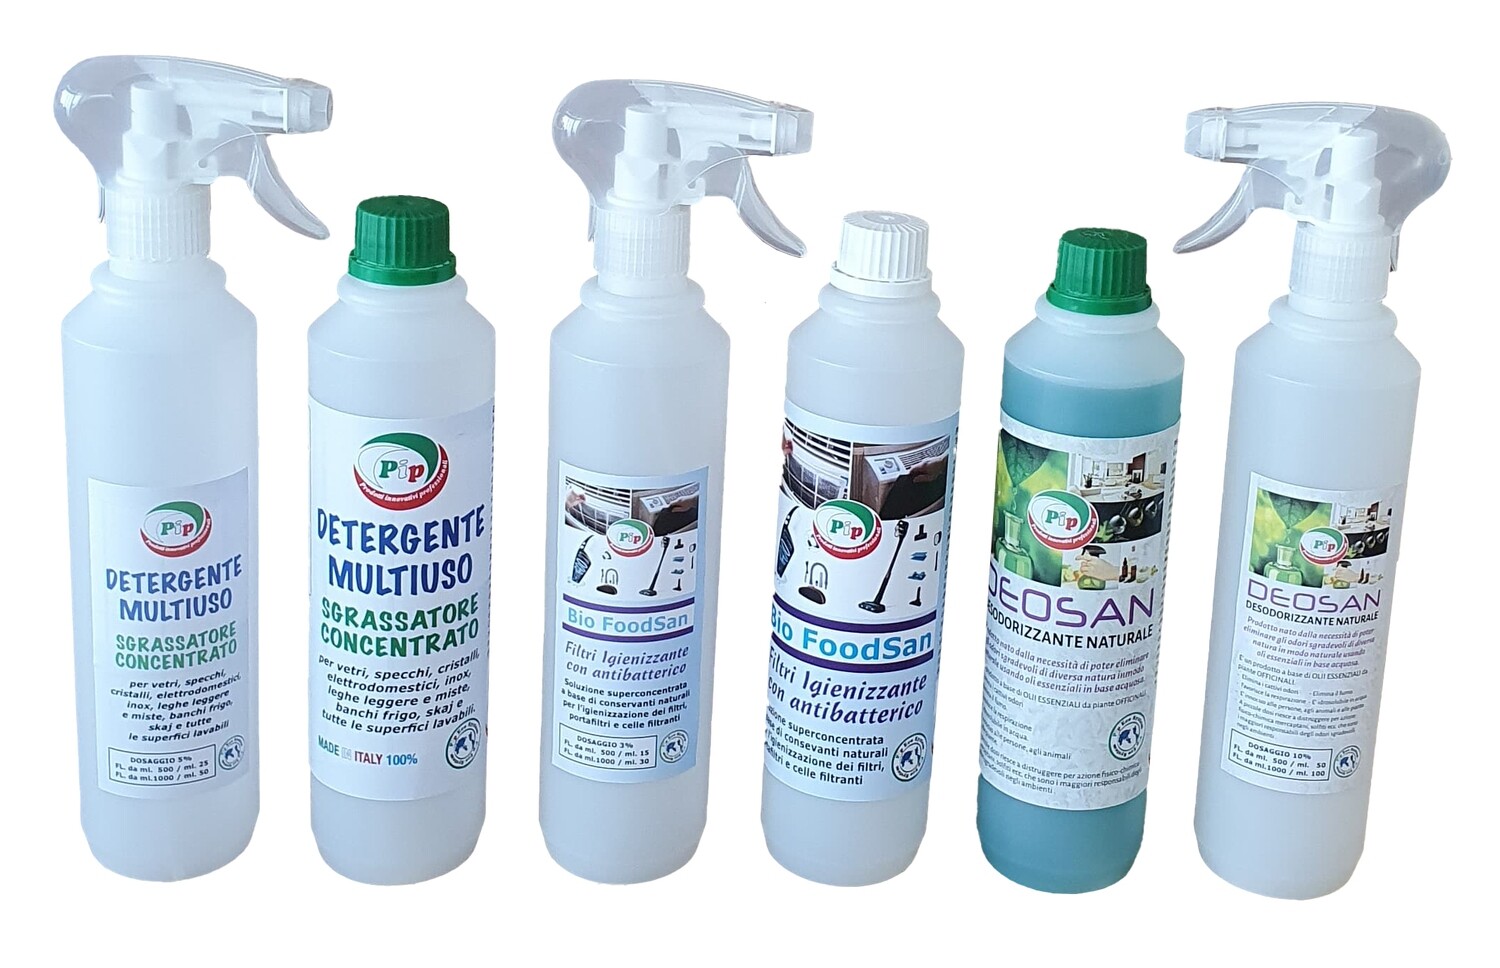 Pulizia, Sanificazione e Deodorizzazione Naturale degli Ambienti Pip House Tris Kit composto da 3 FL. ml.500 Soluzioni concentrate ecologiche, pari a 36 LT. di prodotti pronti all'uso.